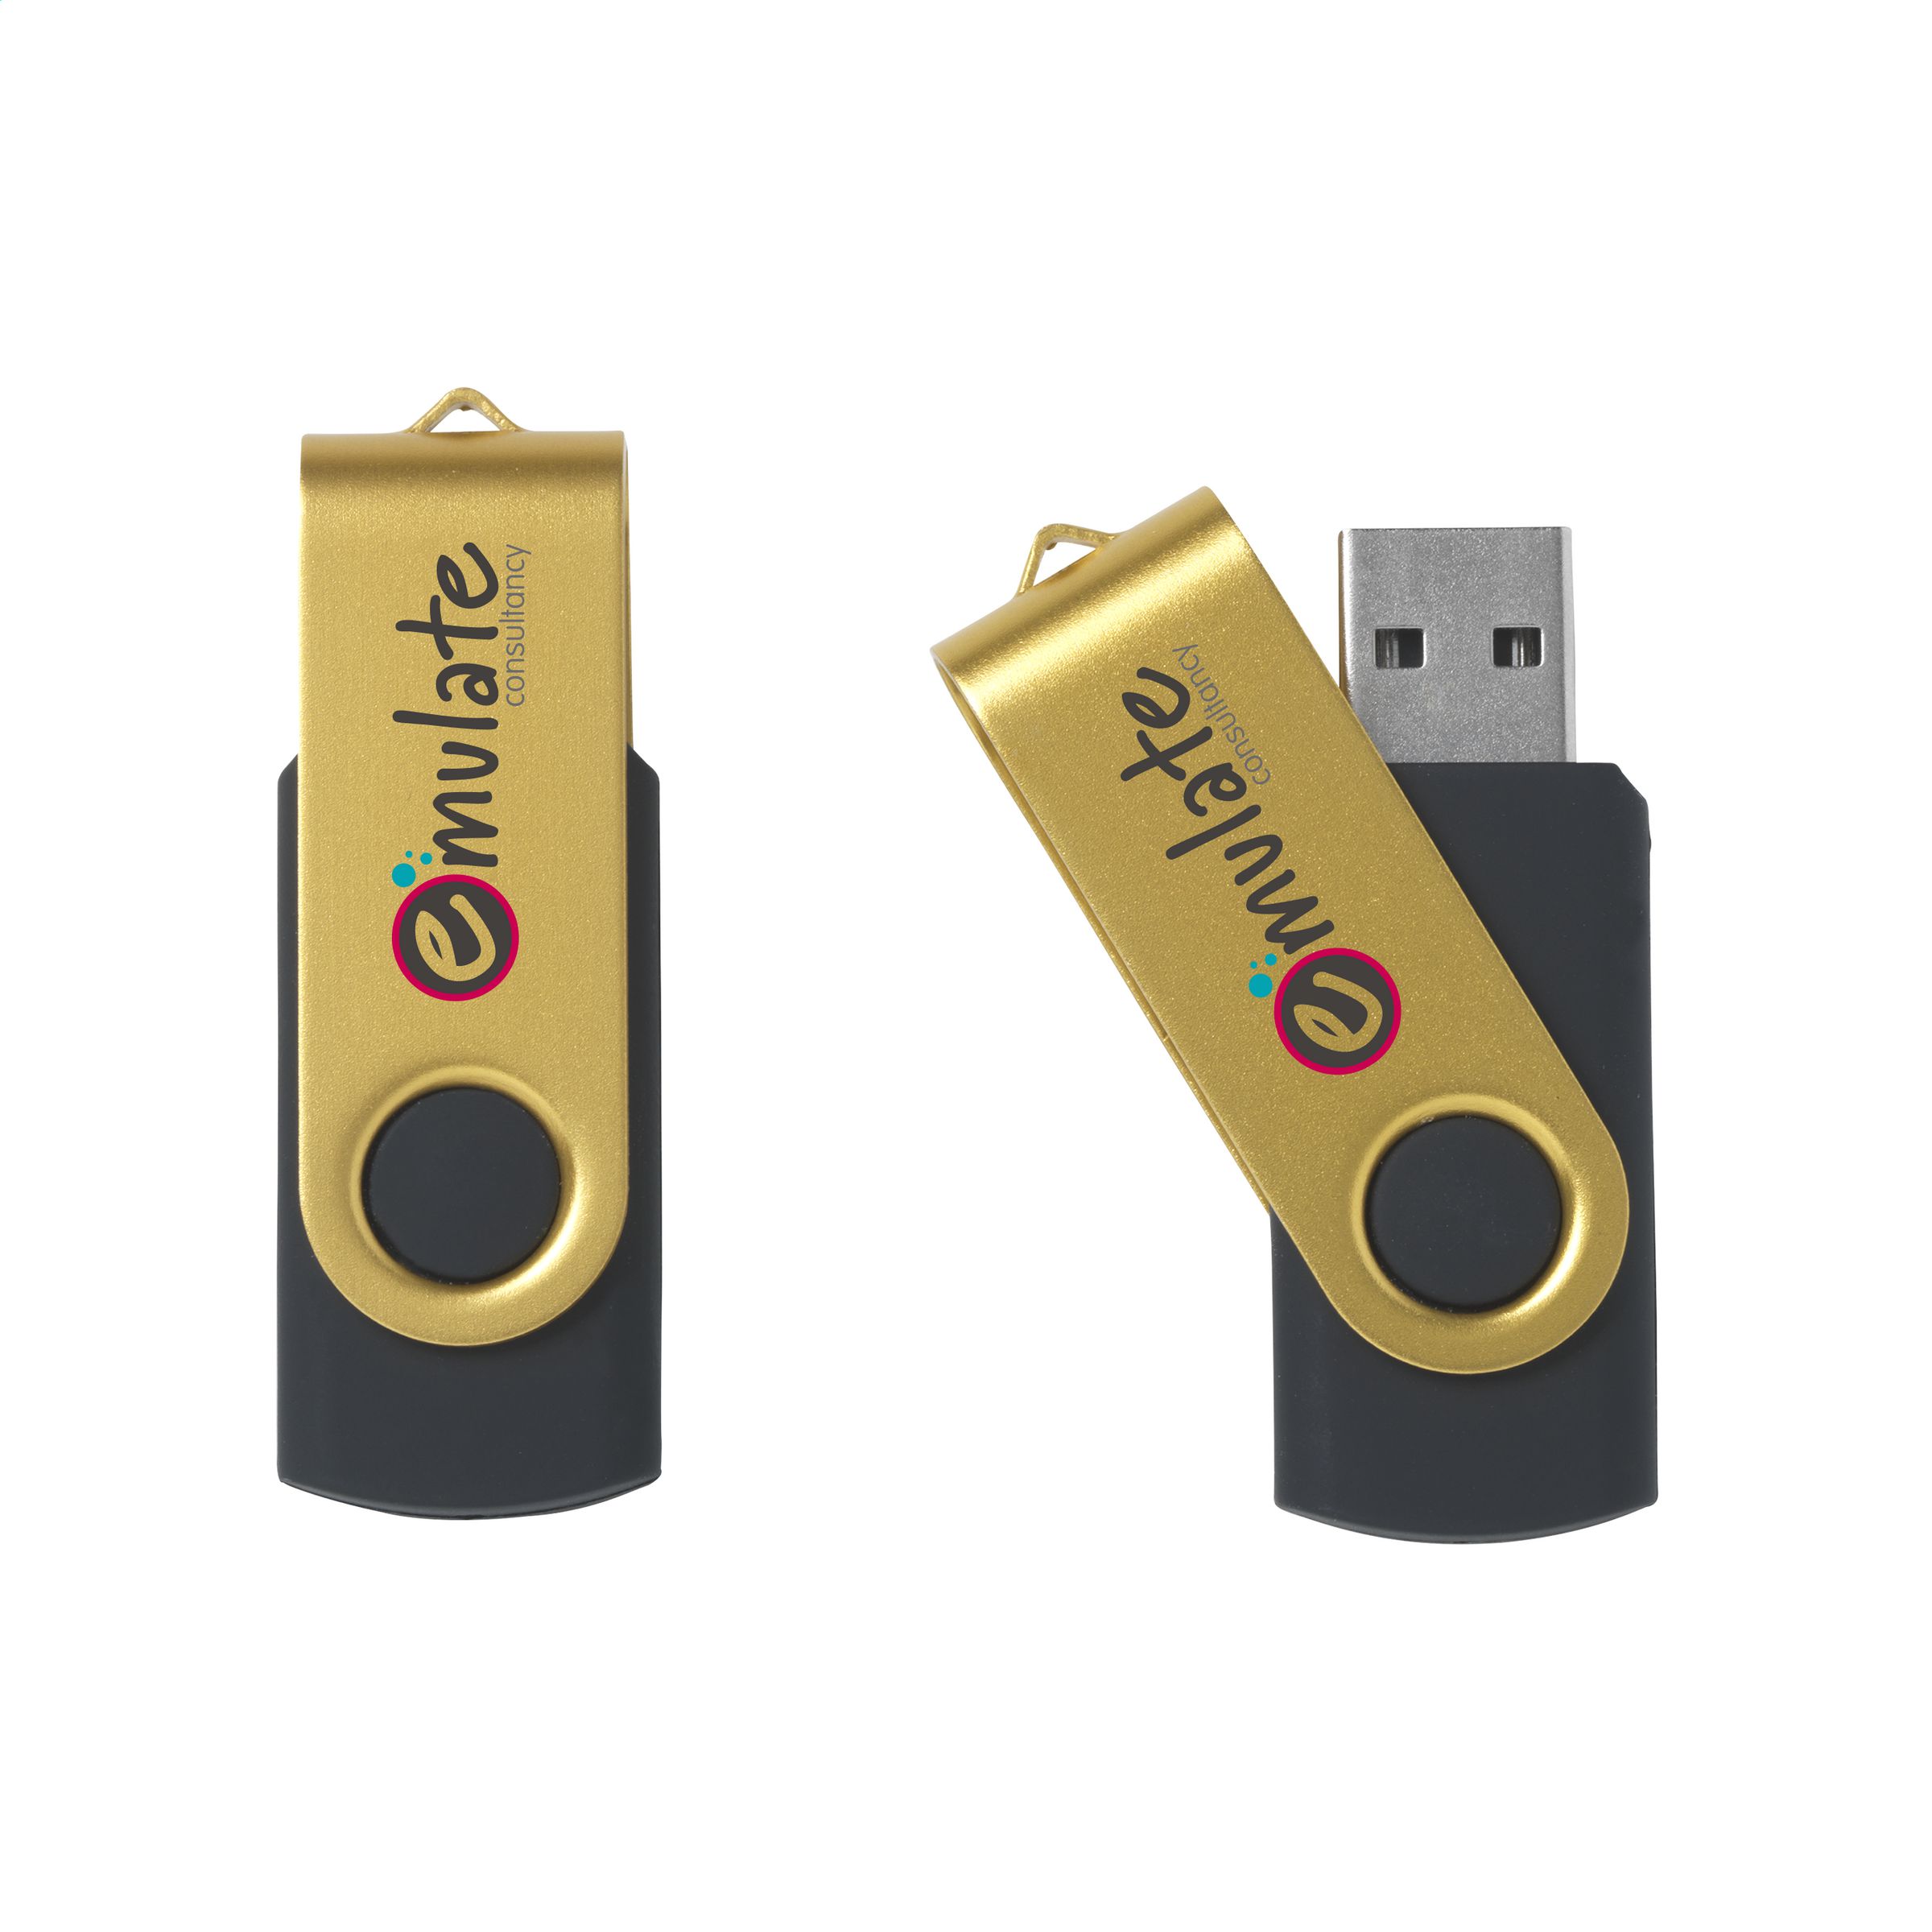 Clé USB publicitaire OSSIFY 4Go